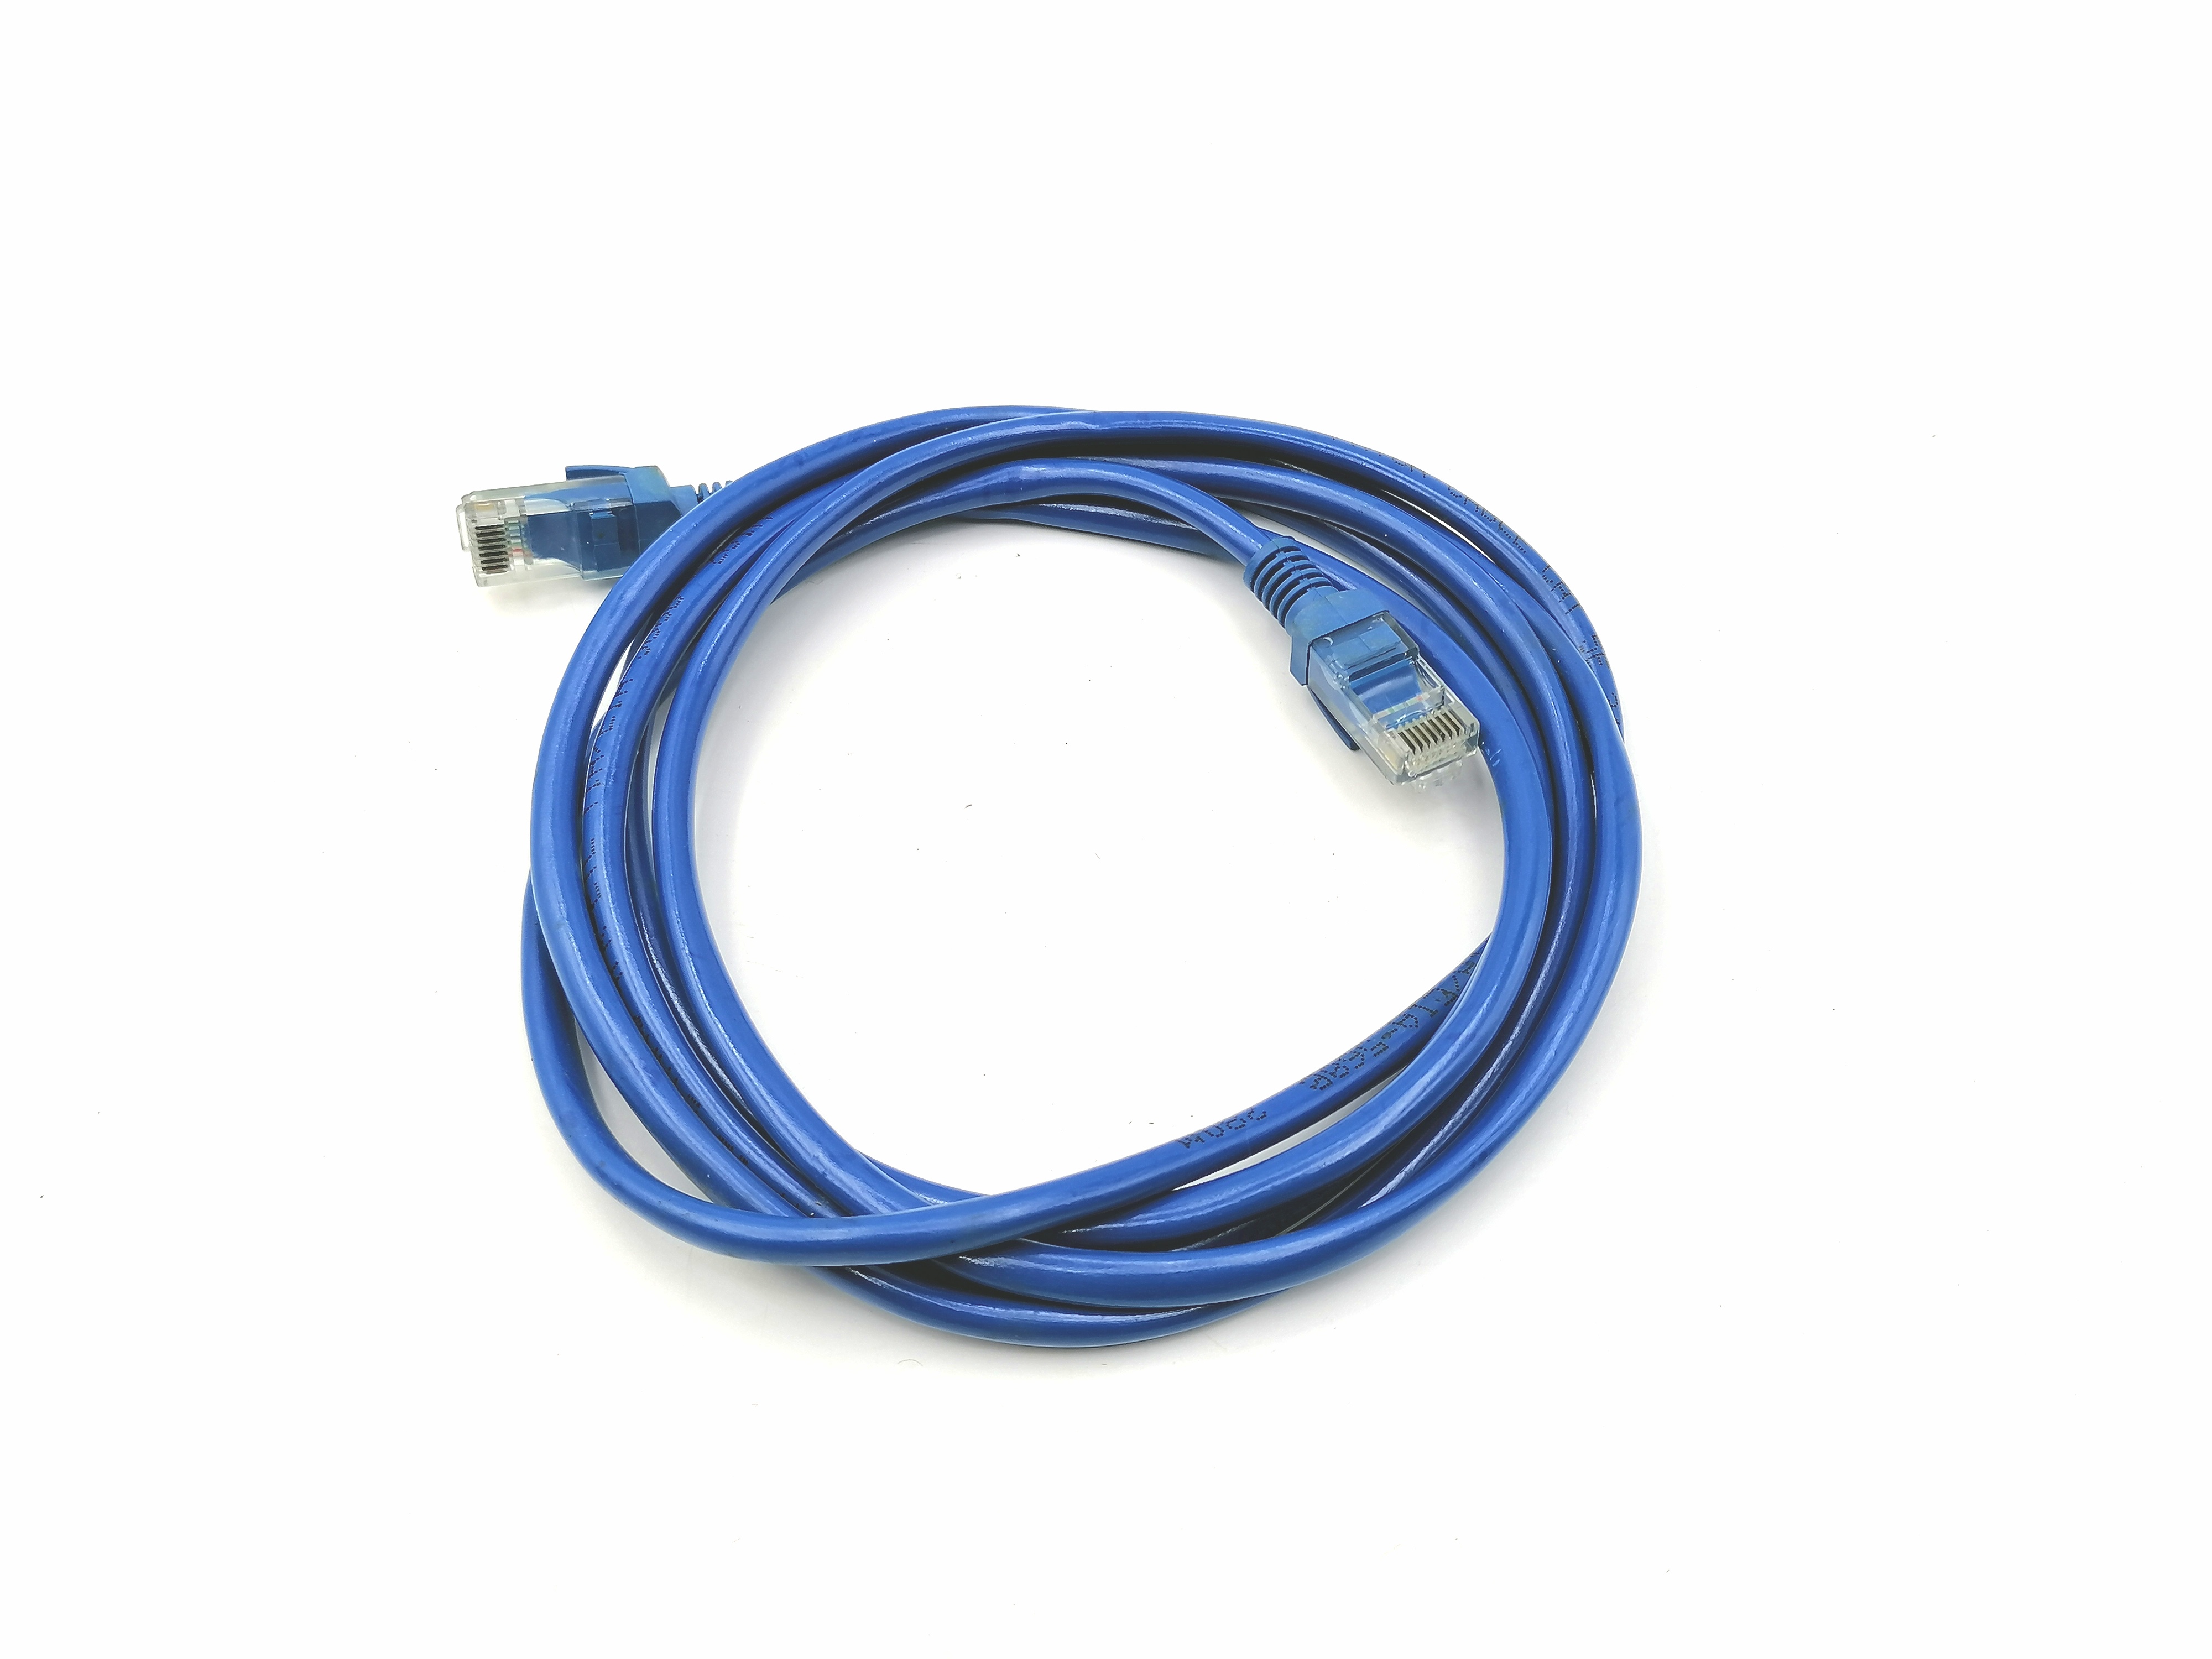 สายแลน(Lan) สำหรับเชื่อมต่อสัญญาณ Internet (2ม.) #Cat5E-สีฟ้า -  ทรงธรรมการไฟฟ้า -ศูนย์รวมอะไหล่ ครบวงจร